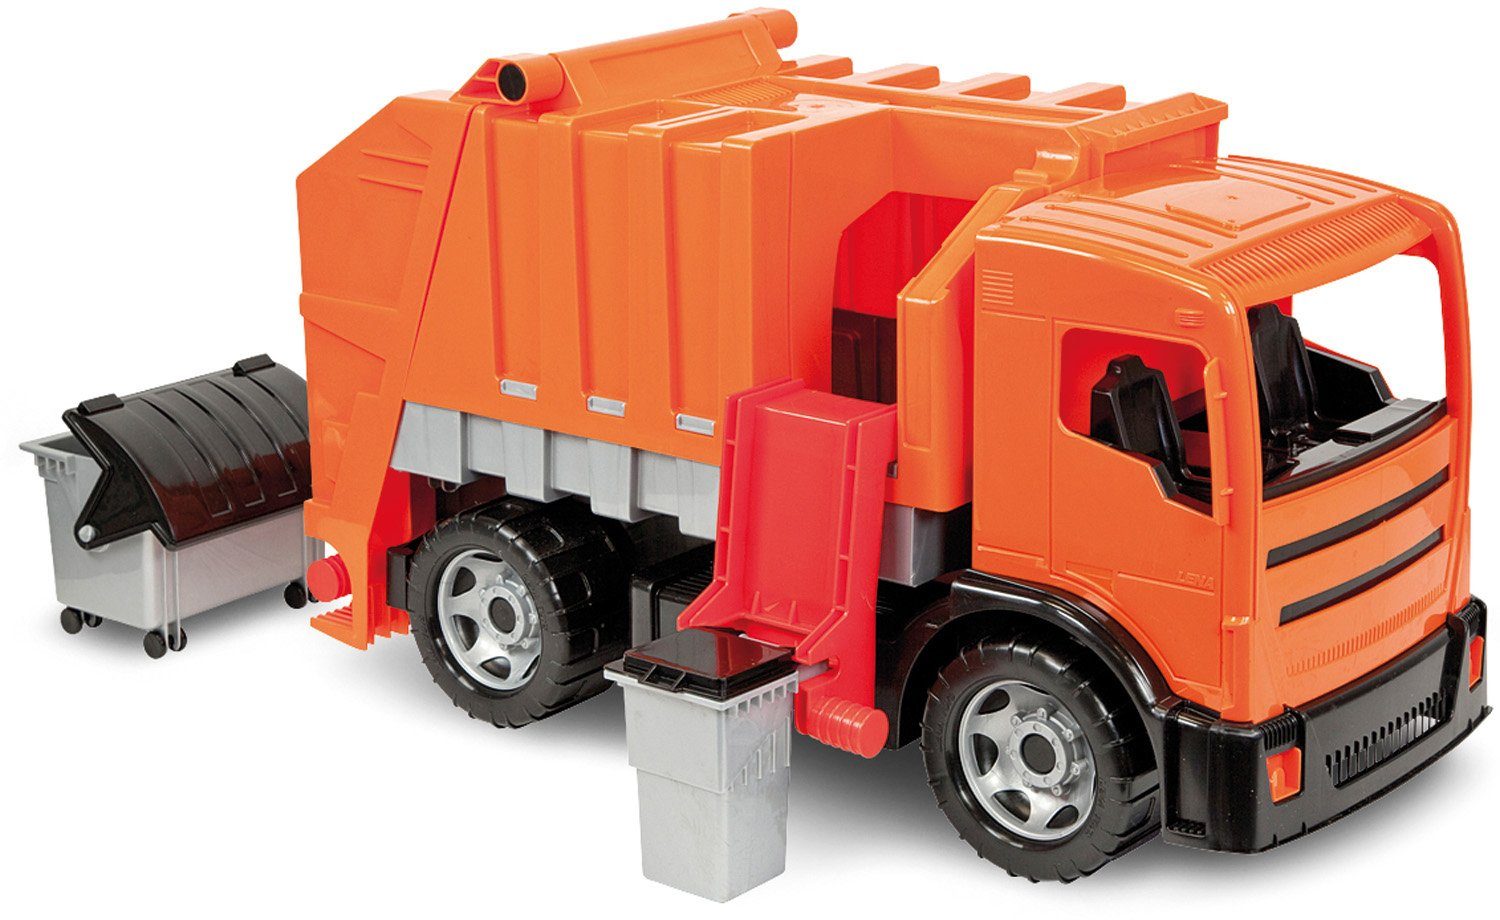 Lena® Spielzeug-Müllwagen GIGA TRUCKS, Müllwagen, Made in Europe